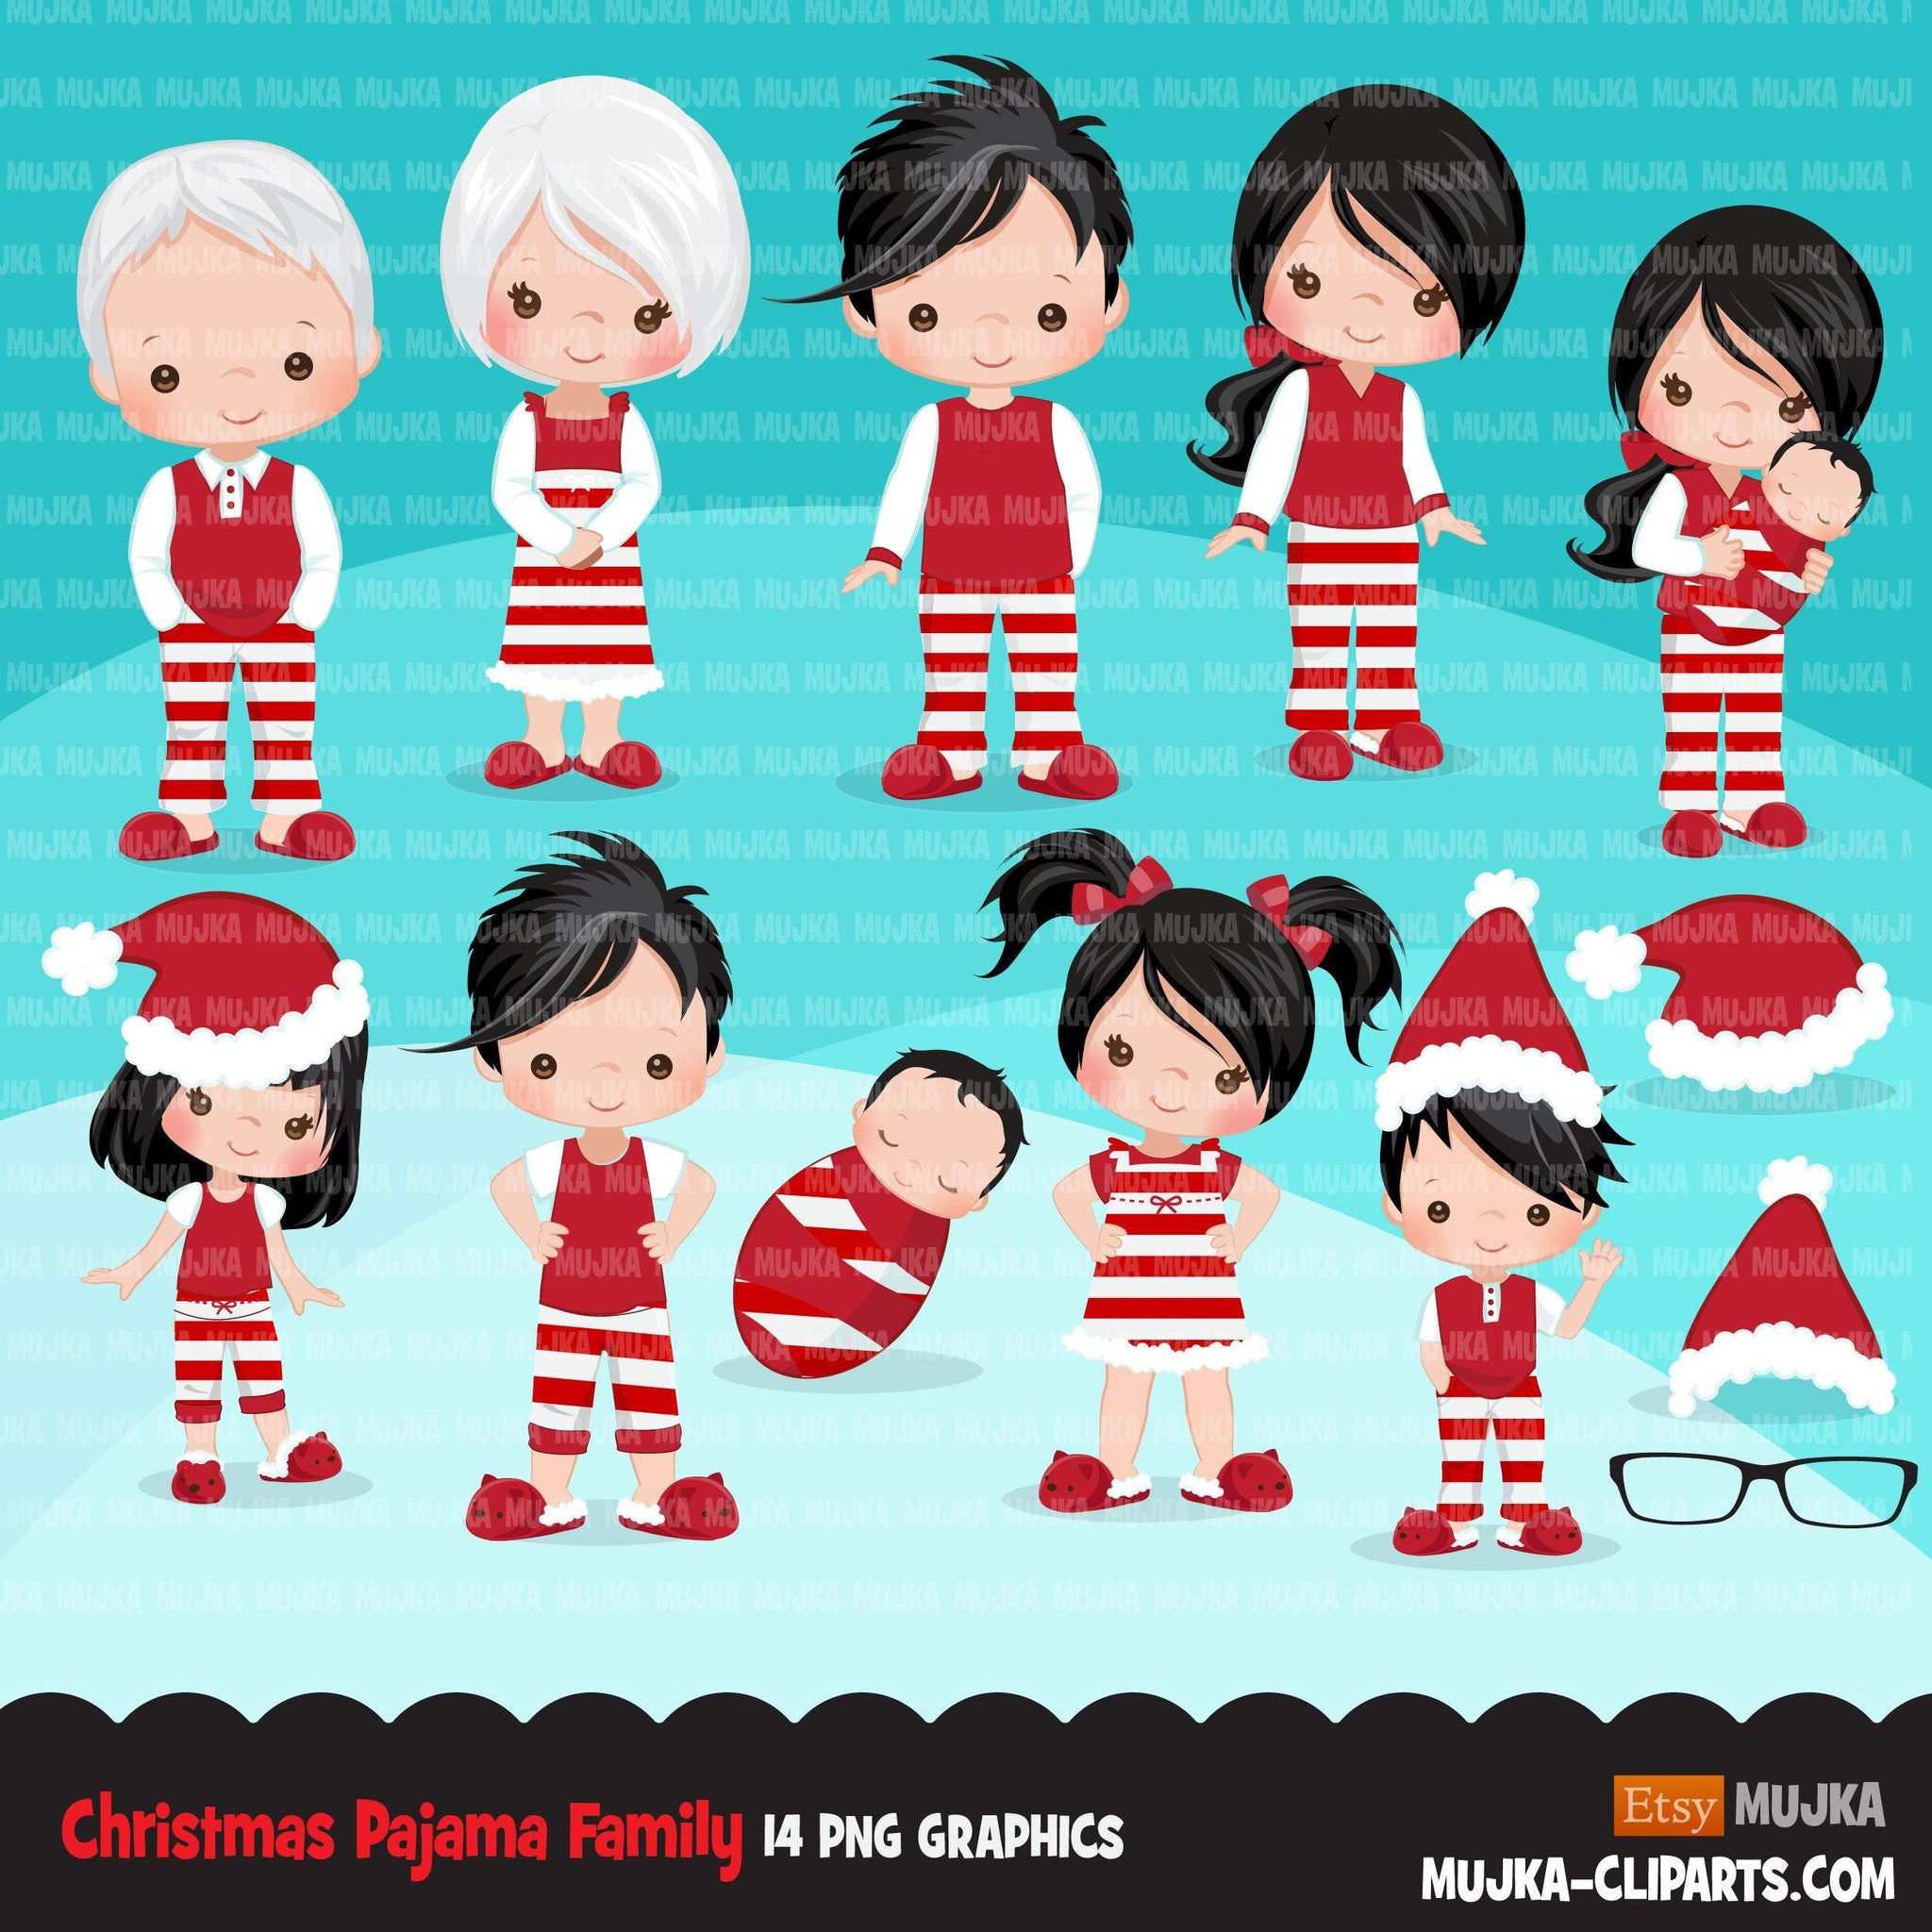 Paquete de imágenes prediseñadas de pijama de Navidad, ilustraciones de Noel, familia de pijamas, gráficos de uso comercial, crea tu propia familia, clip art de sublimación Png